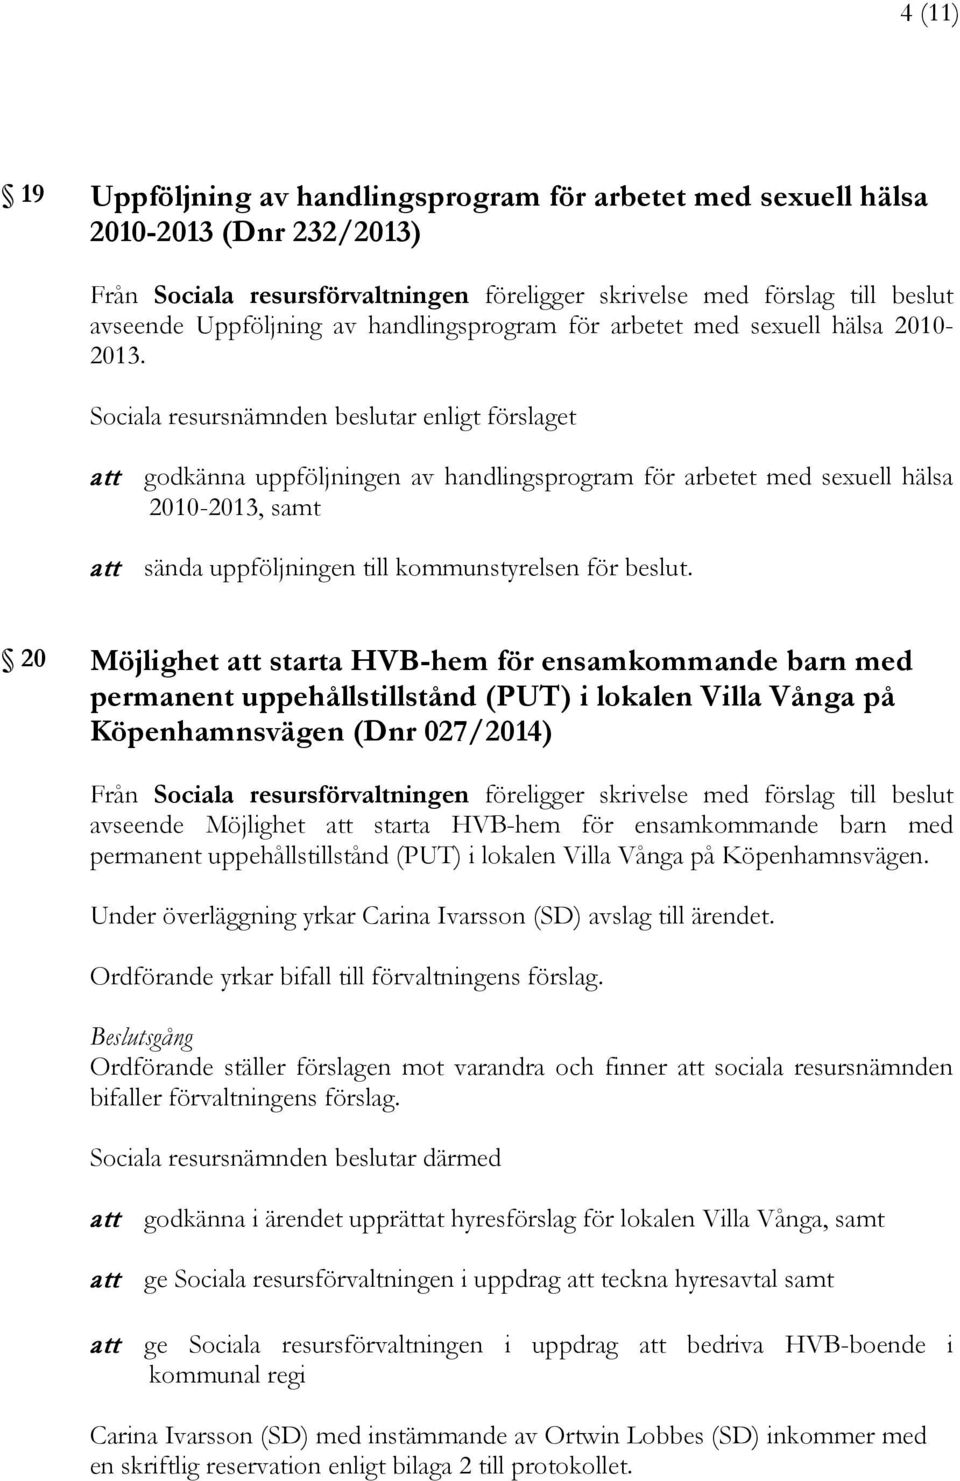 20 Möjlighet att starta HVB-hem för ensamkommande barn med permanent uppehållstillstånd (PUT) i lokalen Villa Vånga på Köpenhamnsvägen (Dnr 027/2014) avseende Möjlighet att starta HVB-hem för